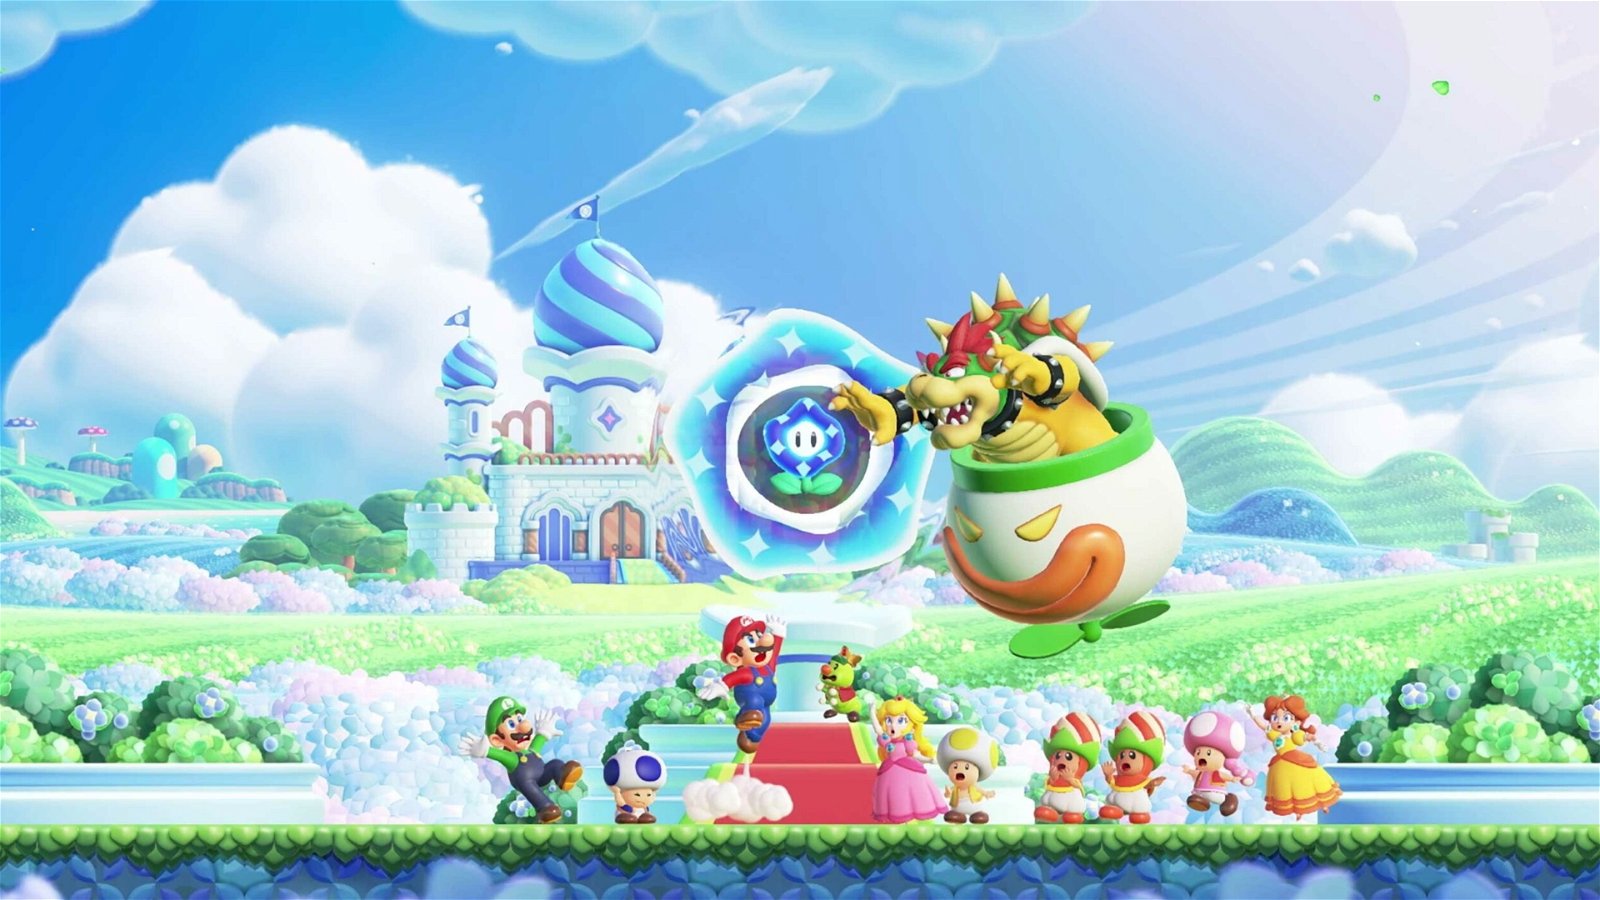 Super Mario Bros. Wonder – Launch Trailer – Nintendo Switch 